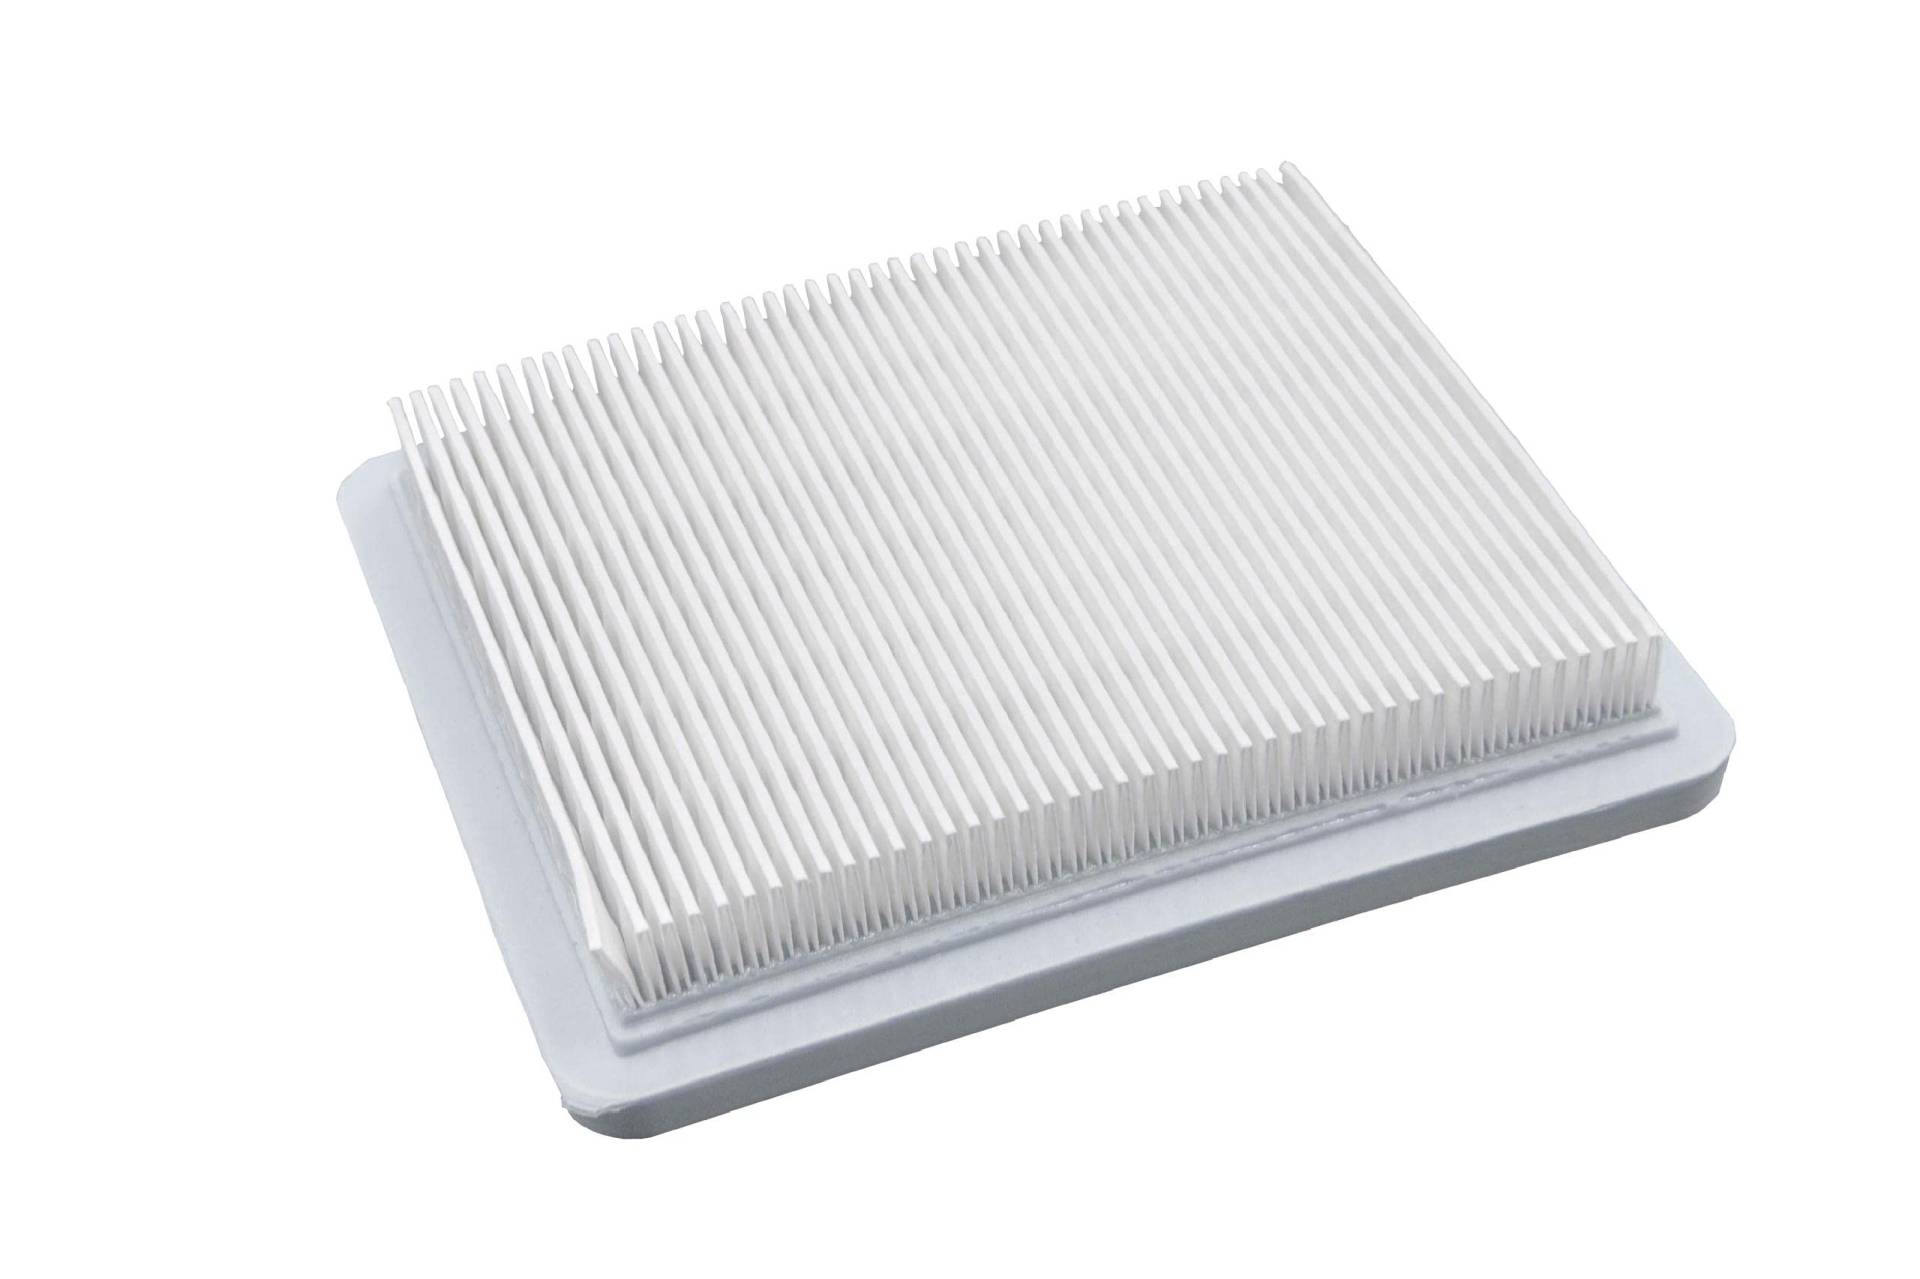 vhbw Papier-Luftfilter Ersatzfilter kompatibel mit Sabo 47-Vario, 47-Vario E Rasenmäher, 13,2 x 11,5 x 2,1 cm, Weiß von vhbw